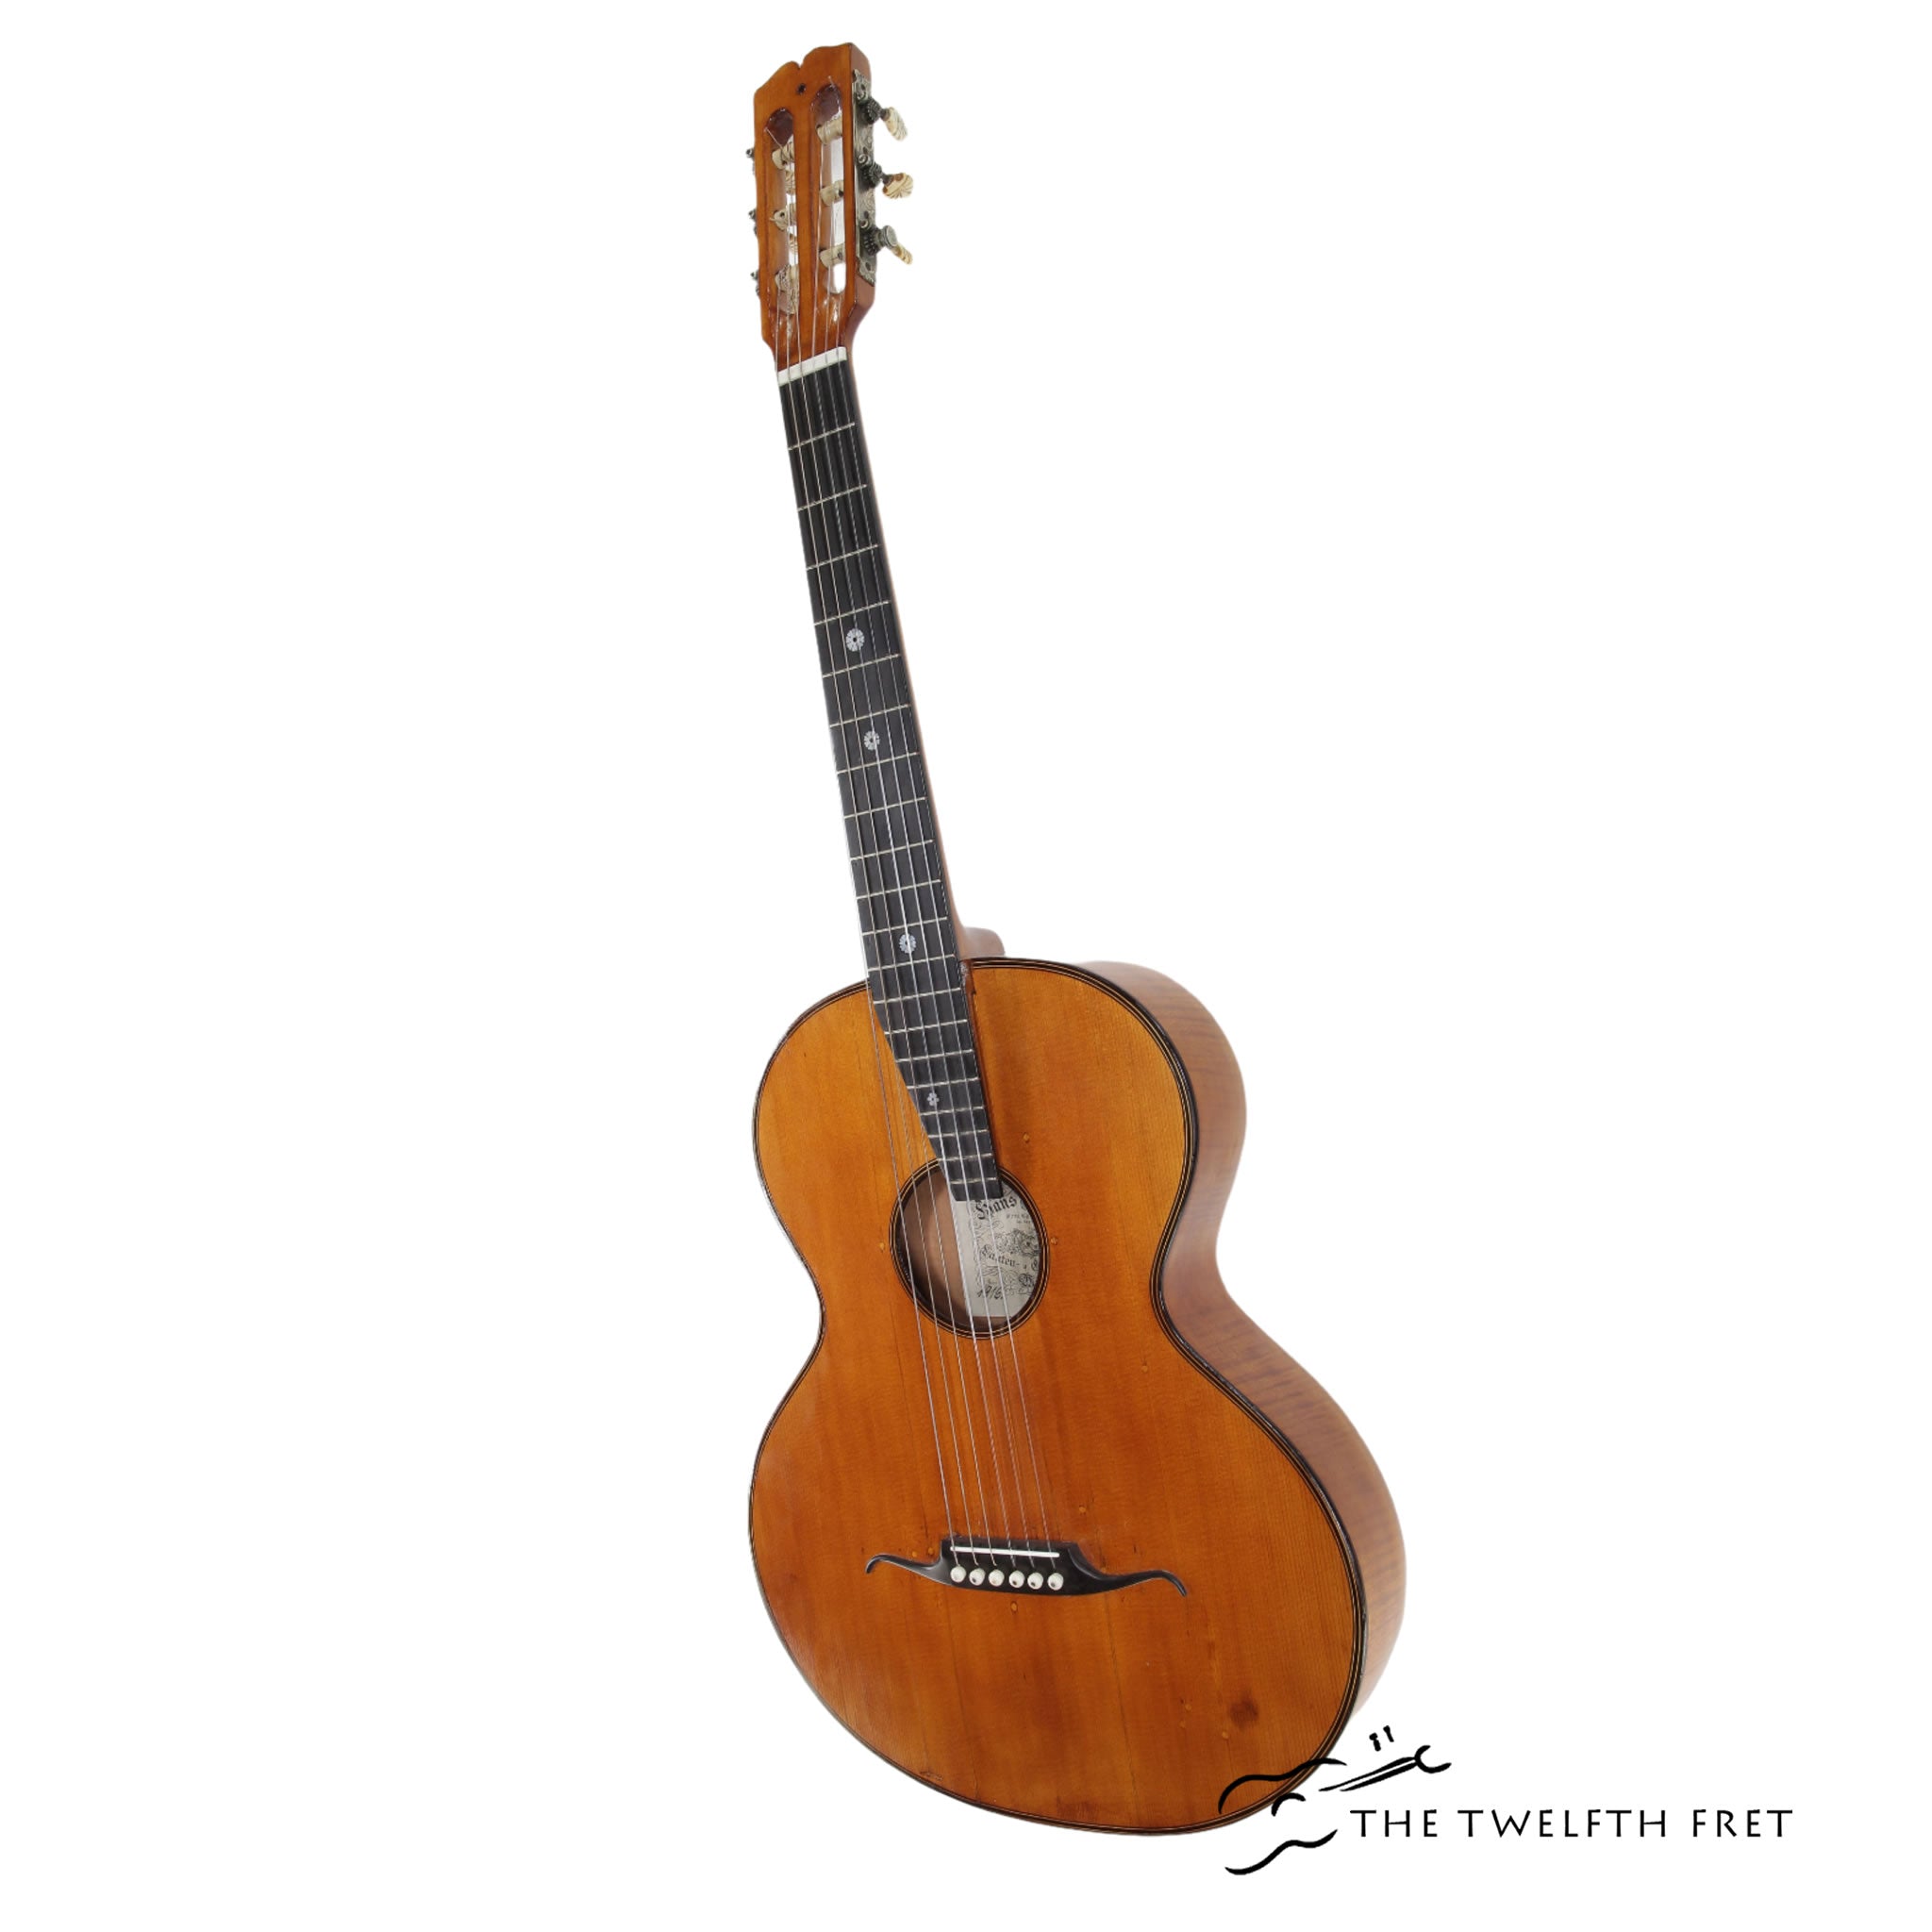 Hans Raab Munich Style Guitar Maple, 1916 - The Twelfth Fret